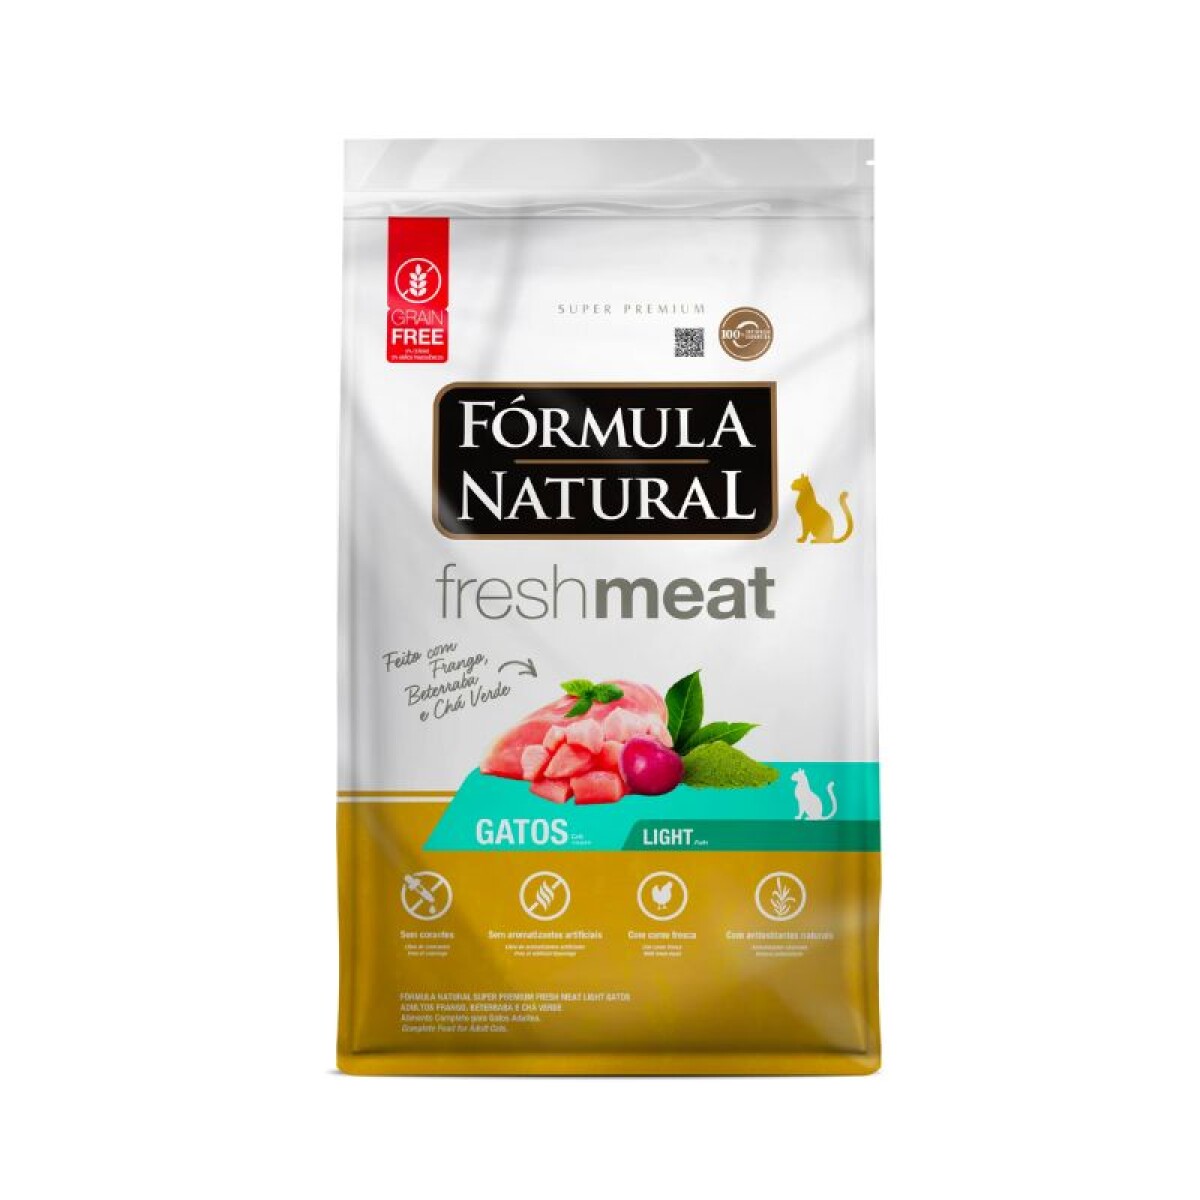 FORMULA NATURAL FRESH MEAT GATO LIGHT 1 KG - Formula Natural Fresh Meat Gato Light 1 Kg 